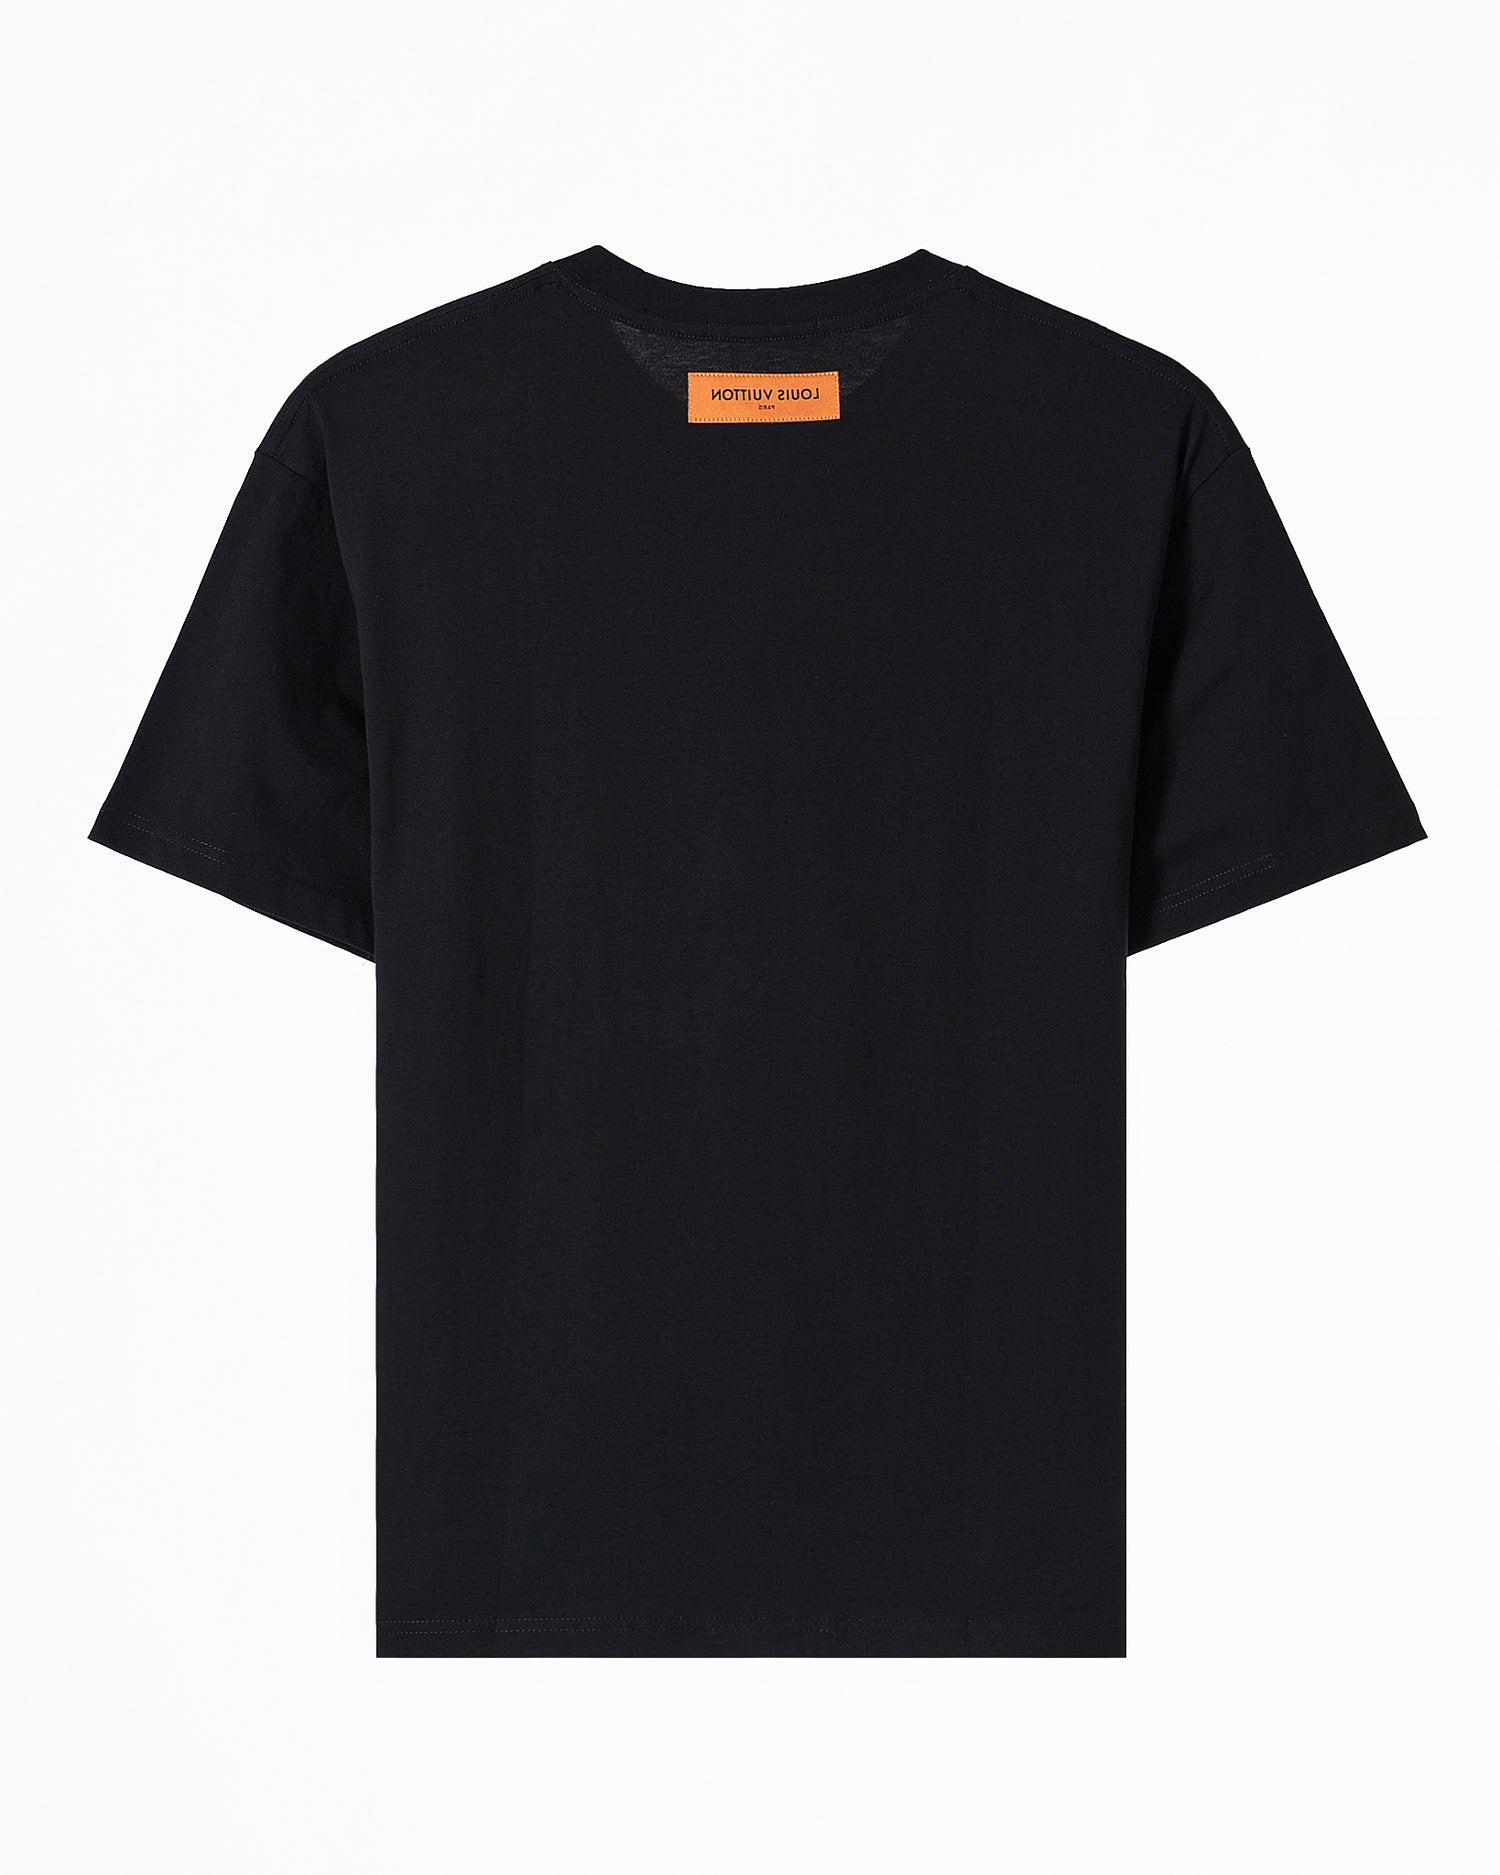 LV Logo Ptinted Over Size Men Black T-Shirt 52.90